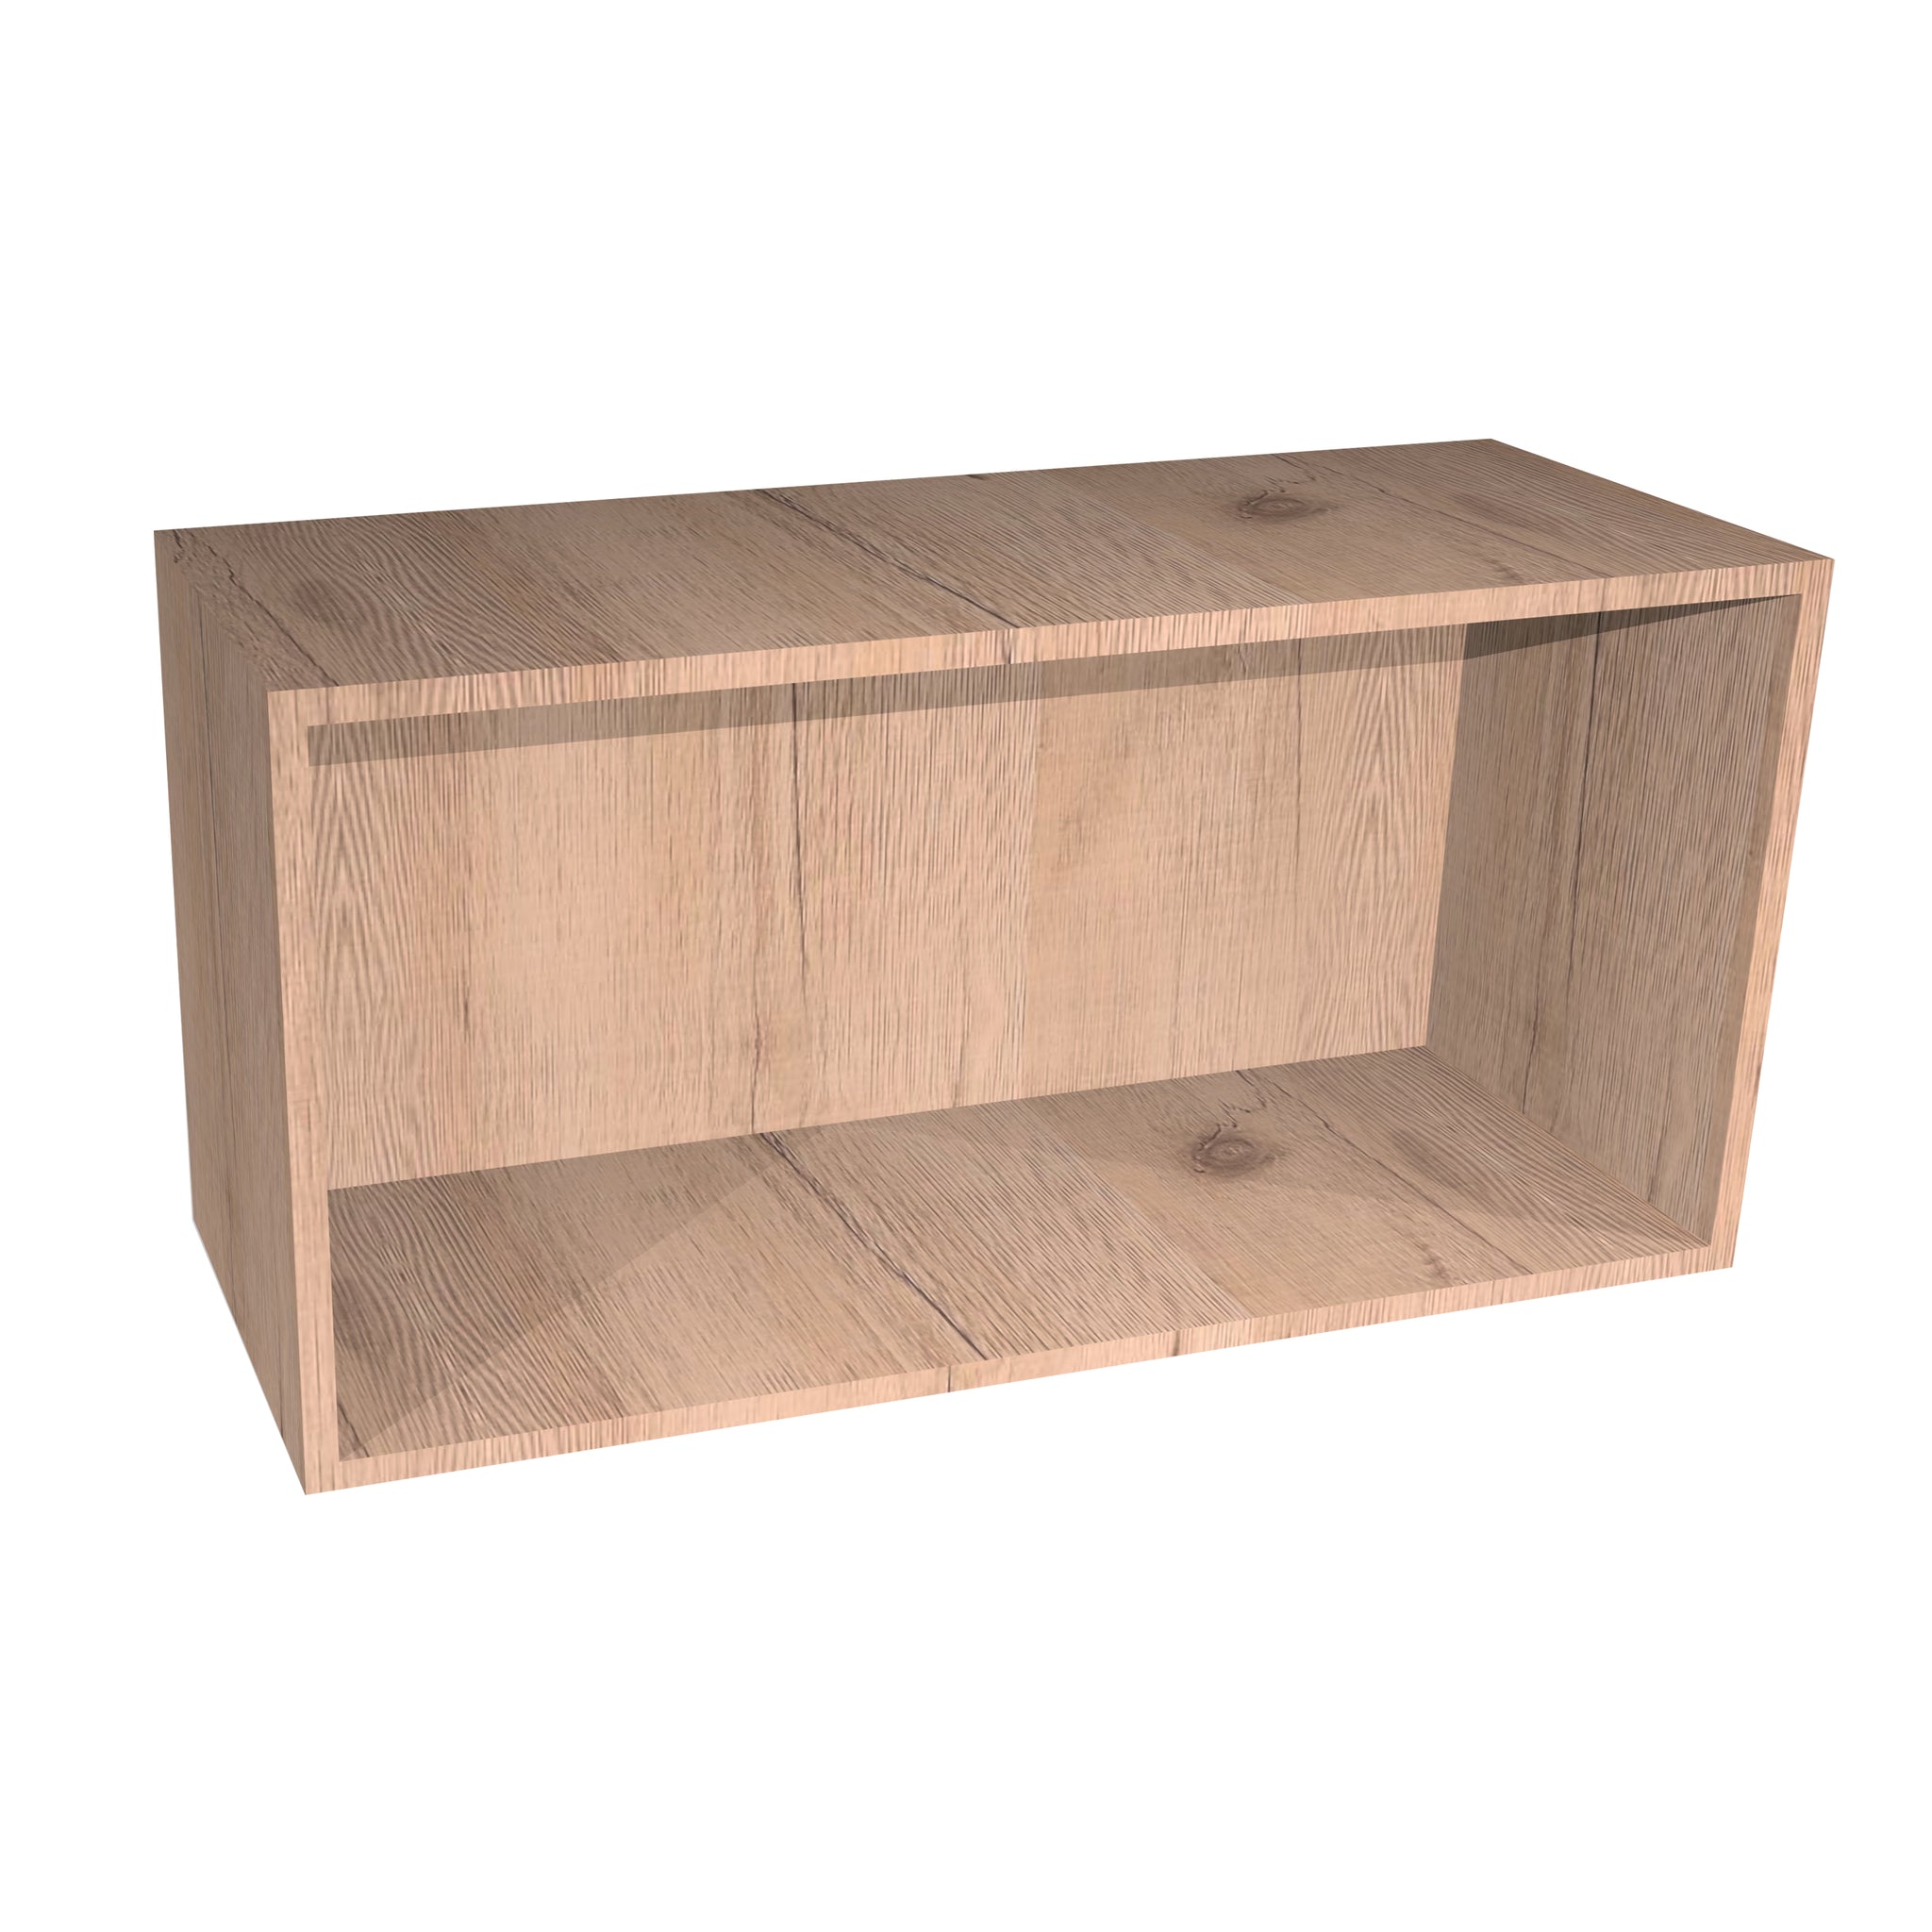 RTA - Rustic Oak - Wall Open Cabinet | 30"W x 15"H x 12"D